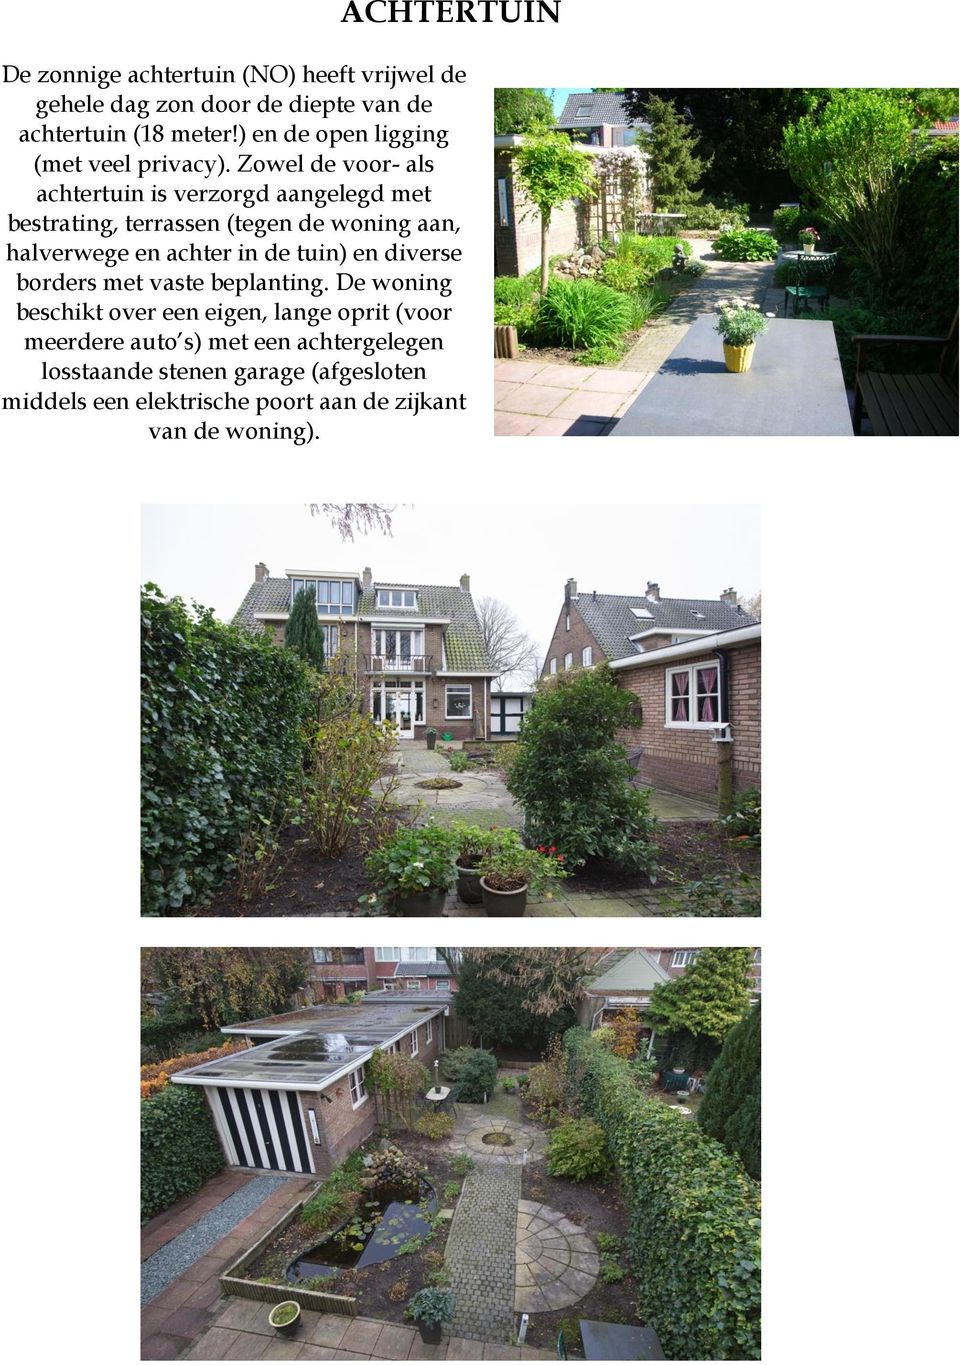 Zowel de voor- als achtertuin is verzorgd aangelegd met bestrating, terrassen (tegen de woning aan, halverwege en achter in de